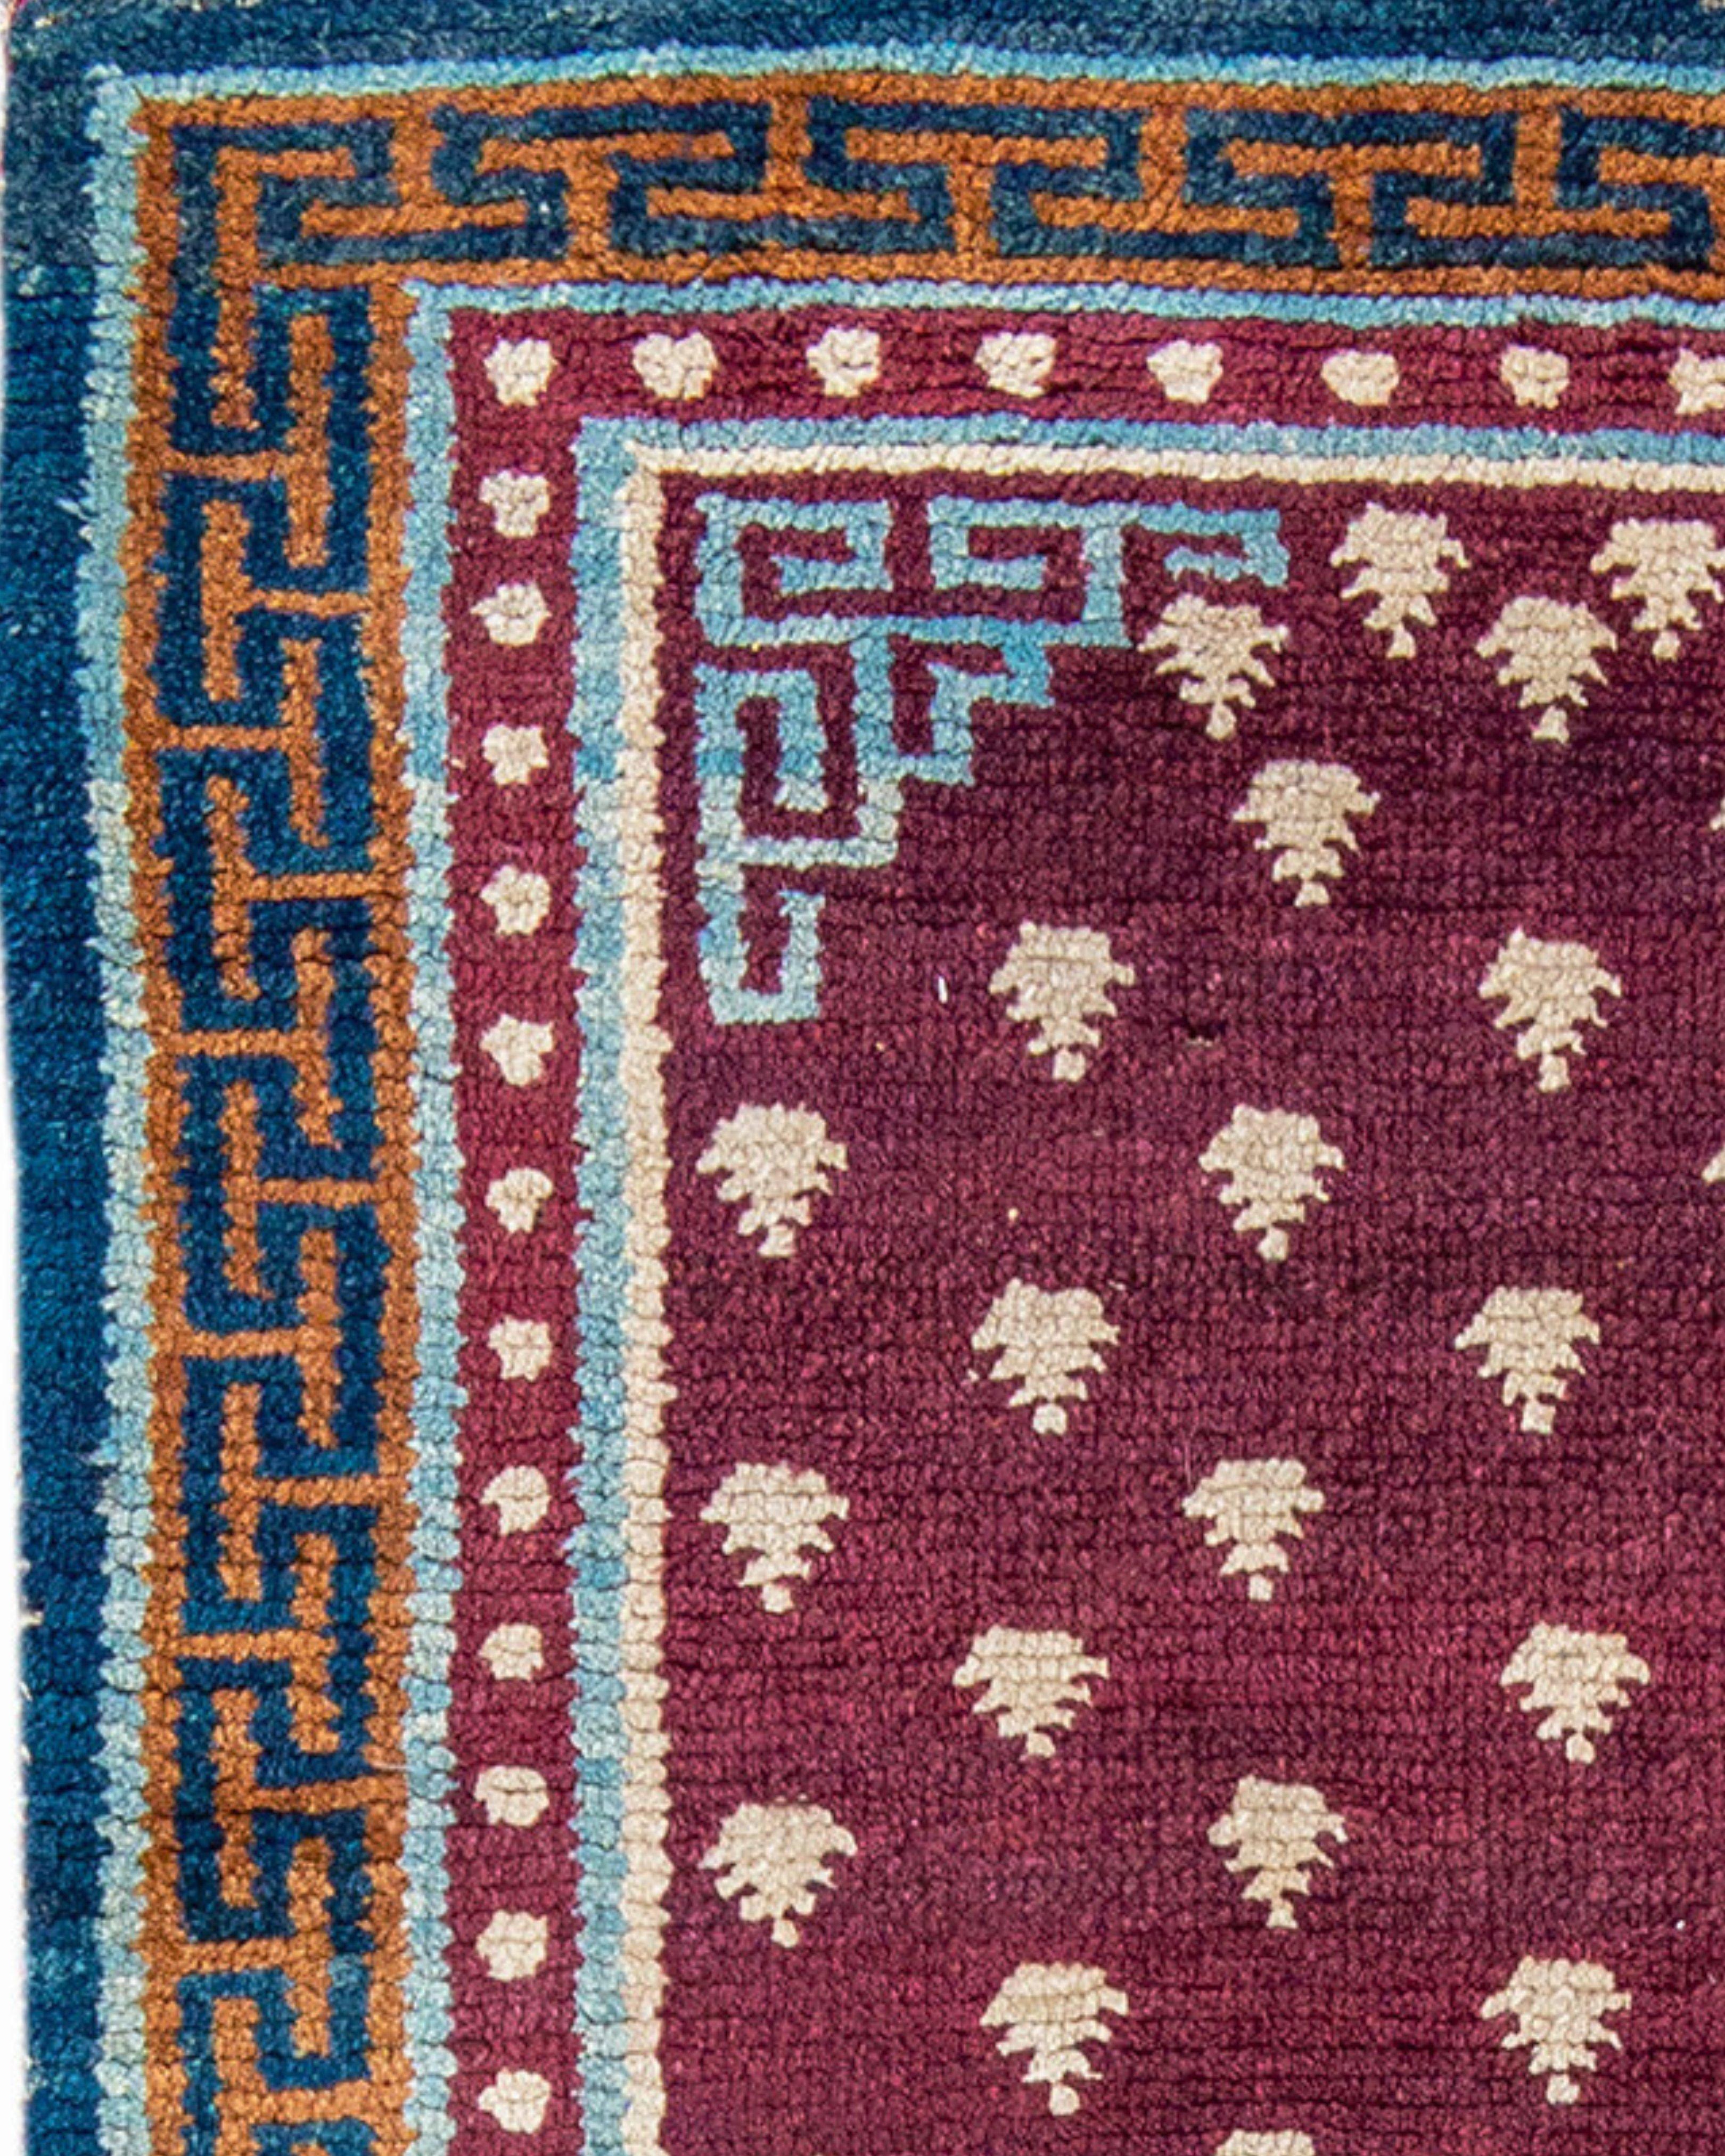 Tapis tibétain ancien, milieu du 19e siècle

L'un des exemples les plus anciens et les plus reconnus qu'un collectionneur puisse espérer acquérir. Les tapis de cette taille sont appelés 